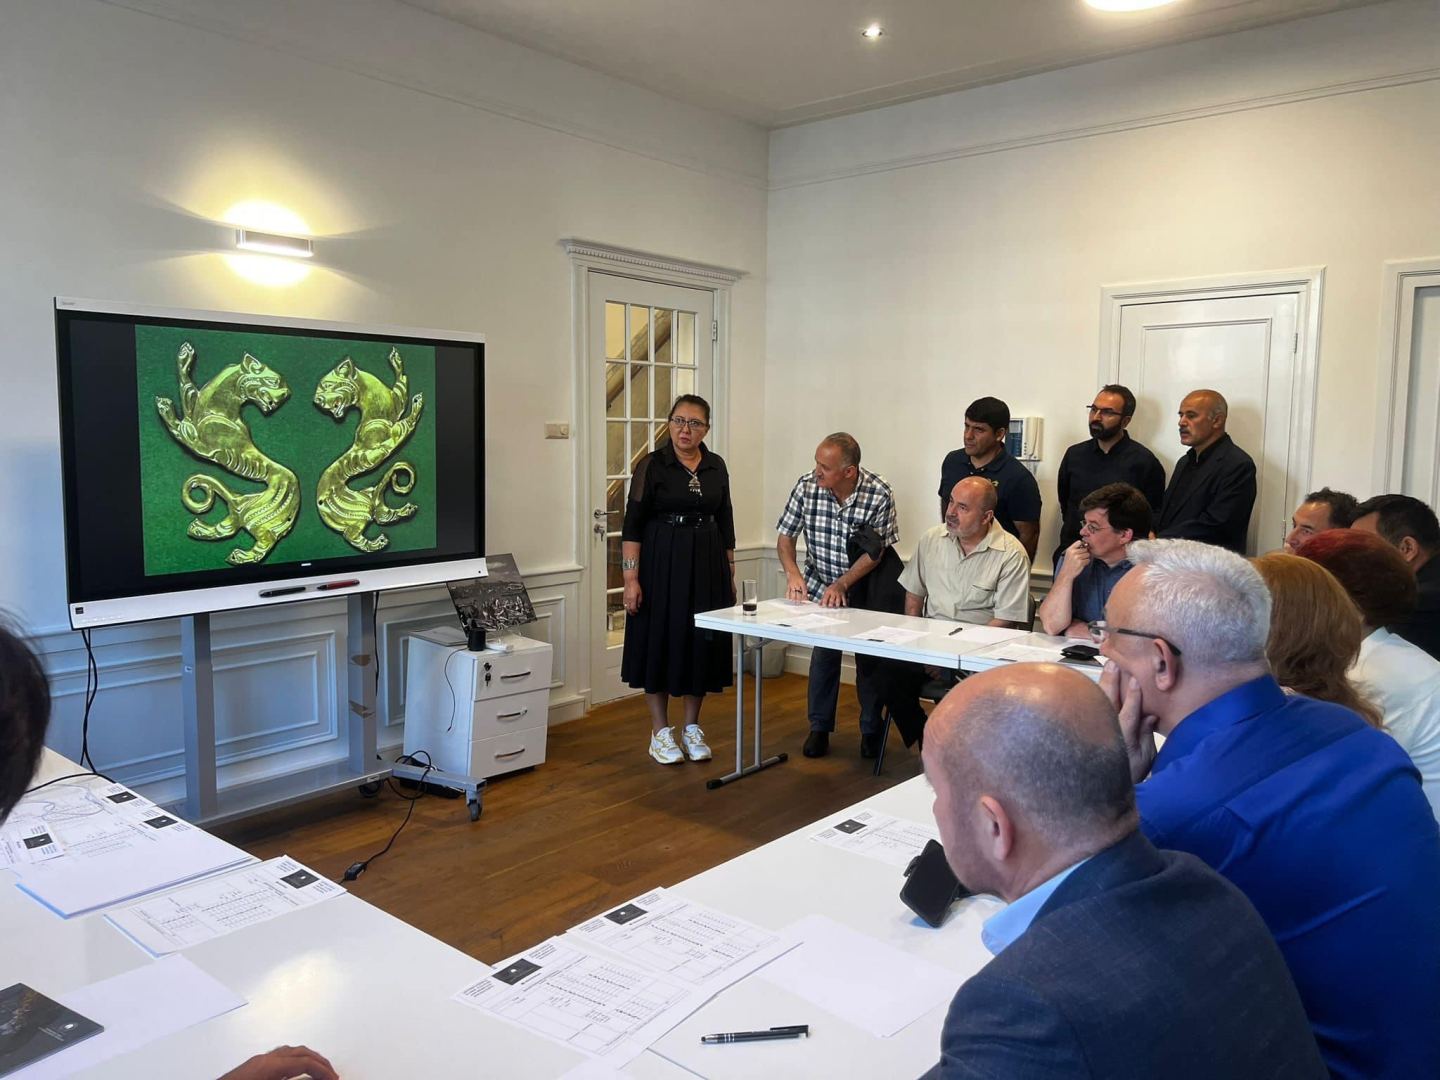 Международный фонд тюркской культуры и наследия открыл в Амстердаме выставку древнетюркской письменности (ФОТО)